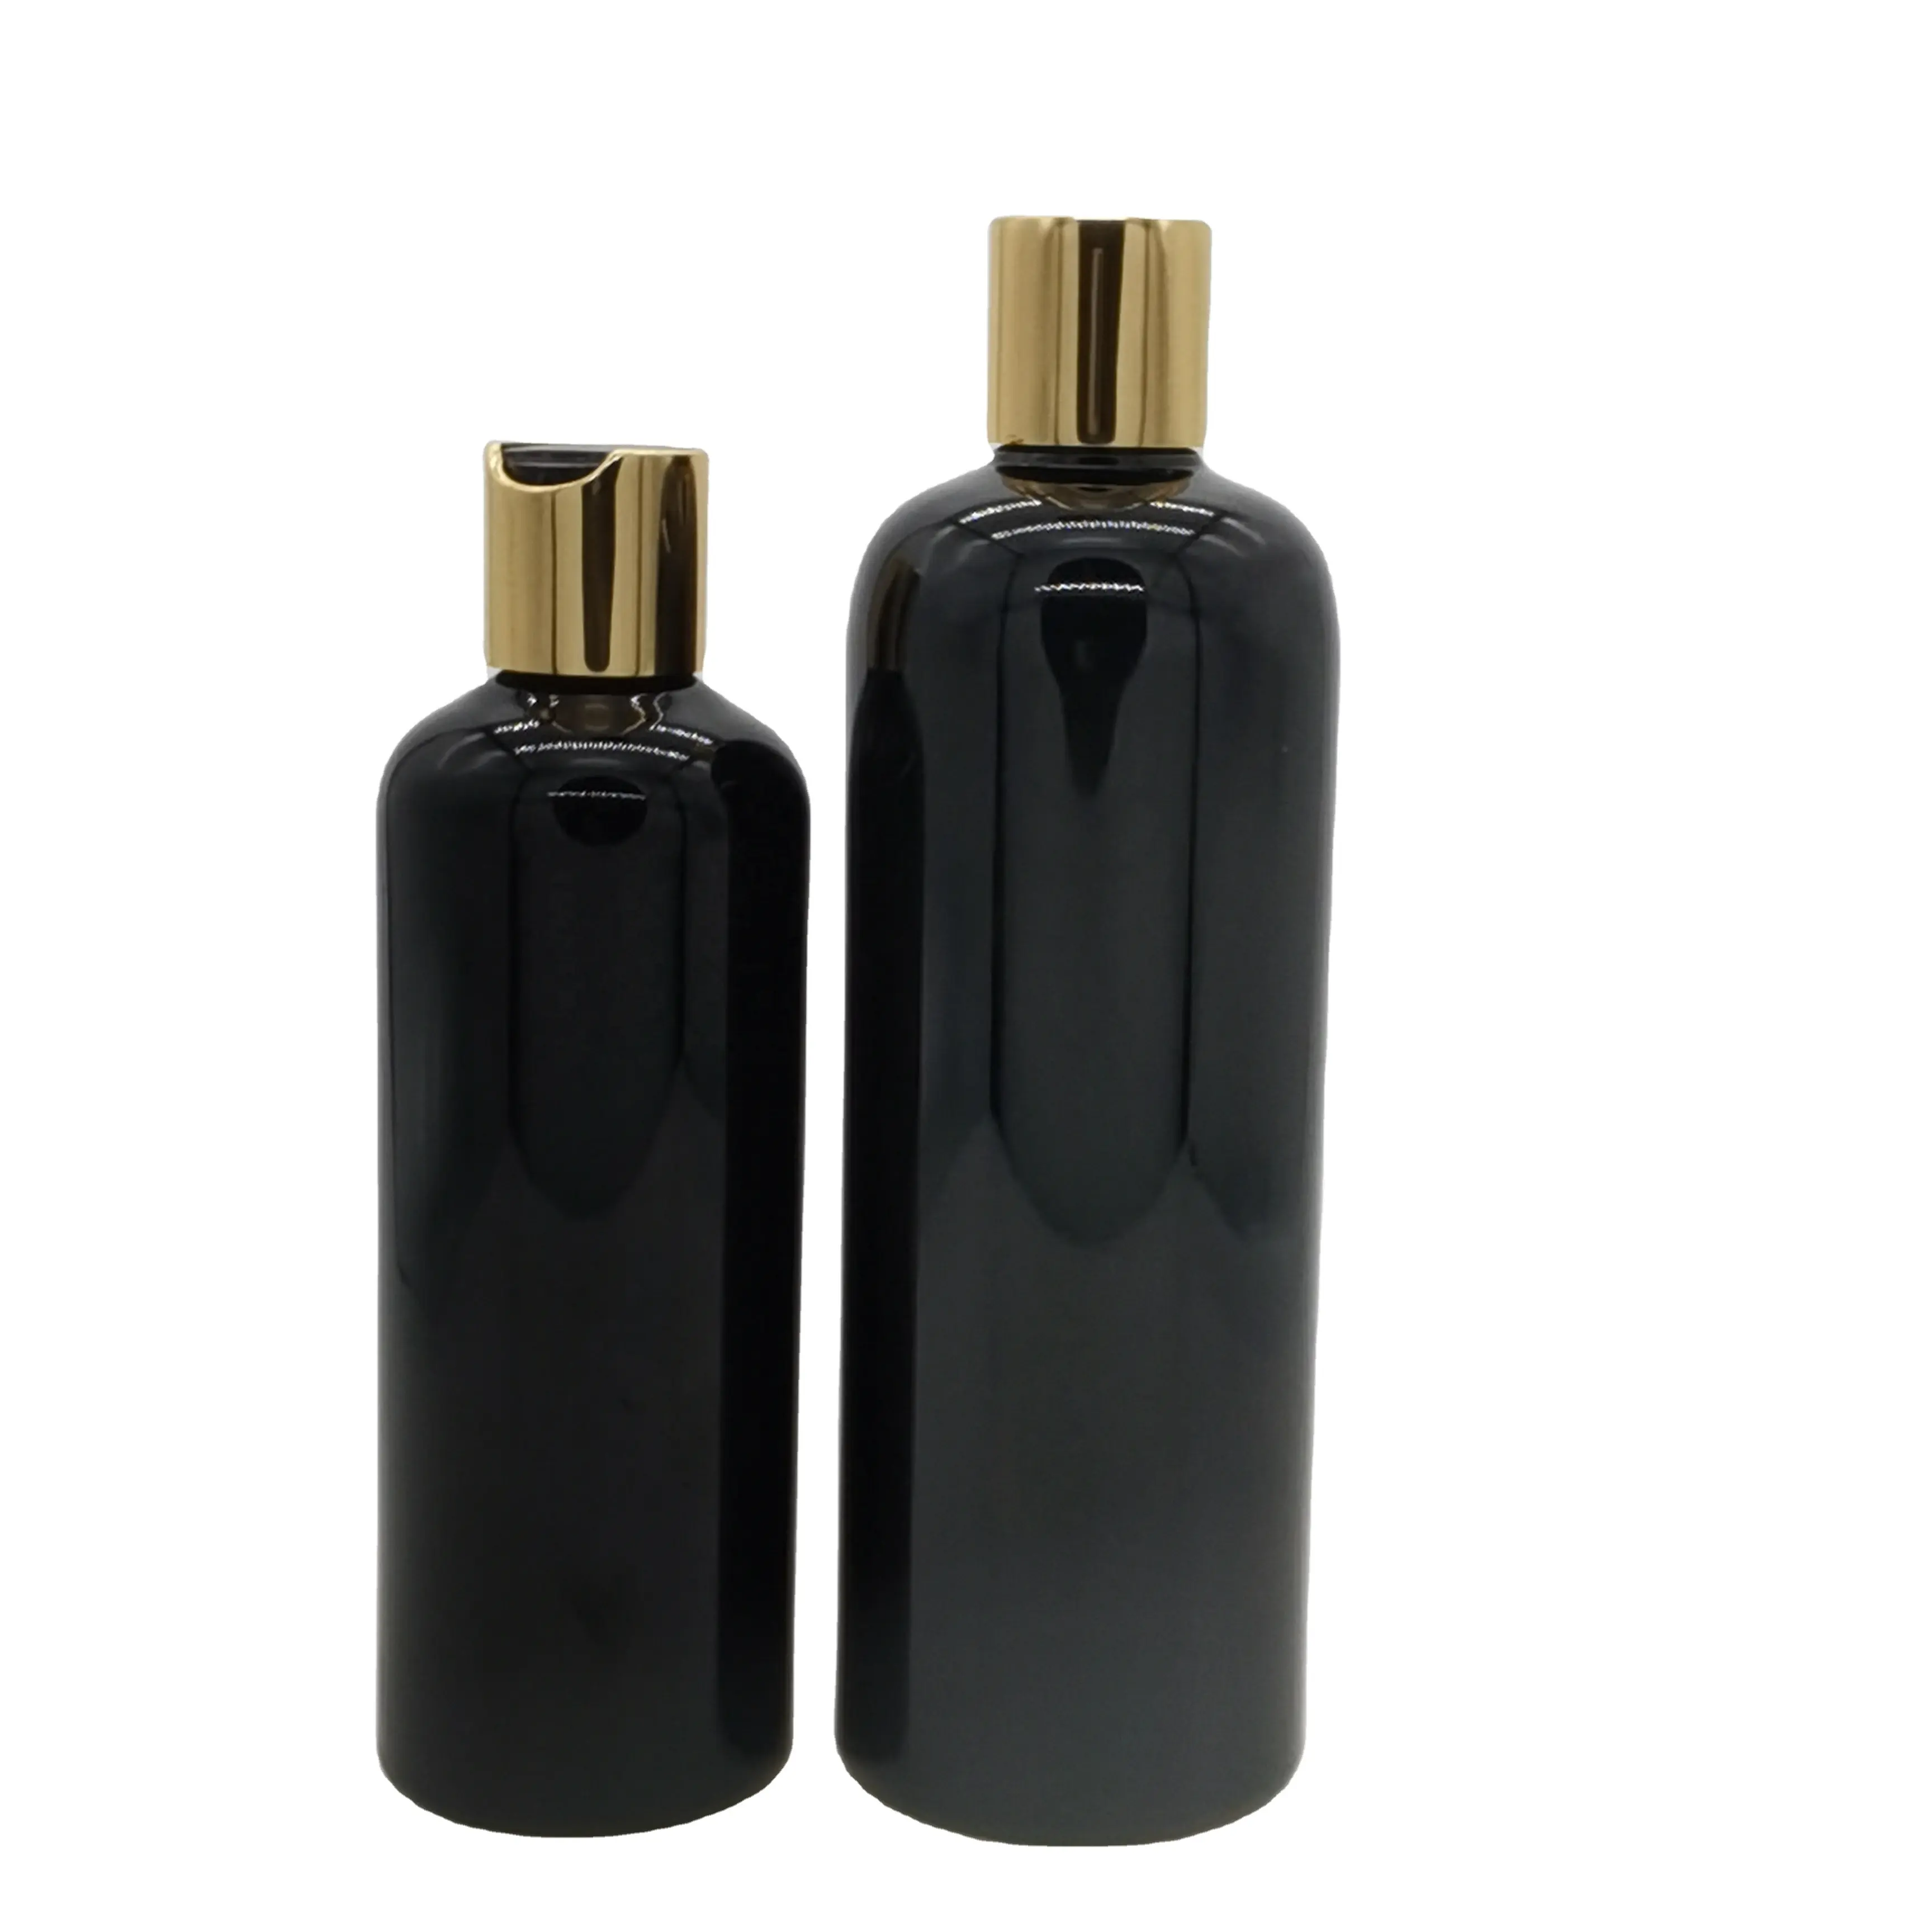 Flacon transparent en plastique, bouteille pour shampooing, lotion noir ou blanc en PET avec couvercle à rabat, 500/300/200/250ml, 5 pièces